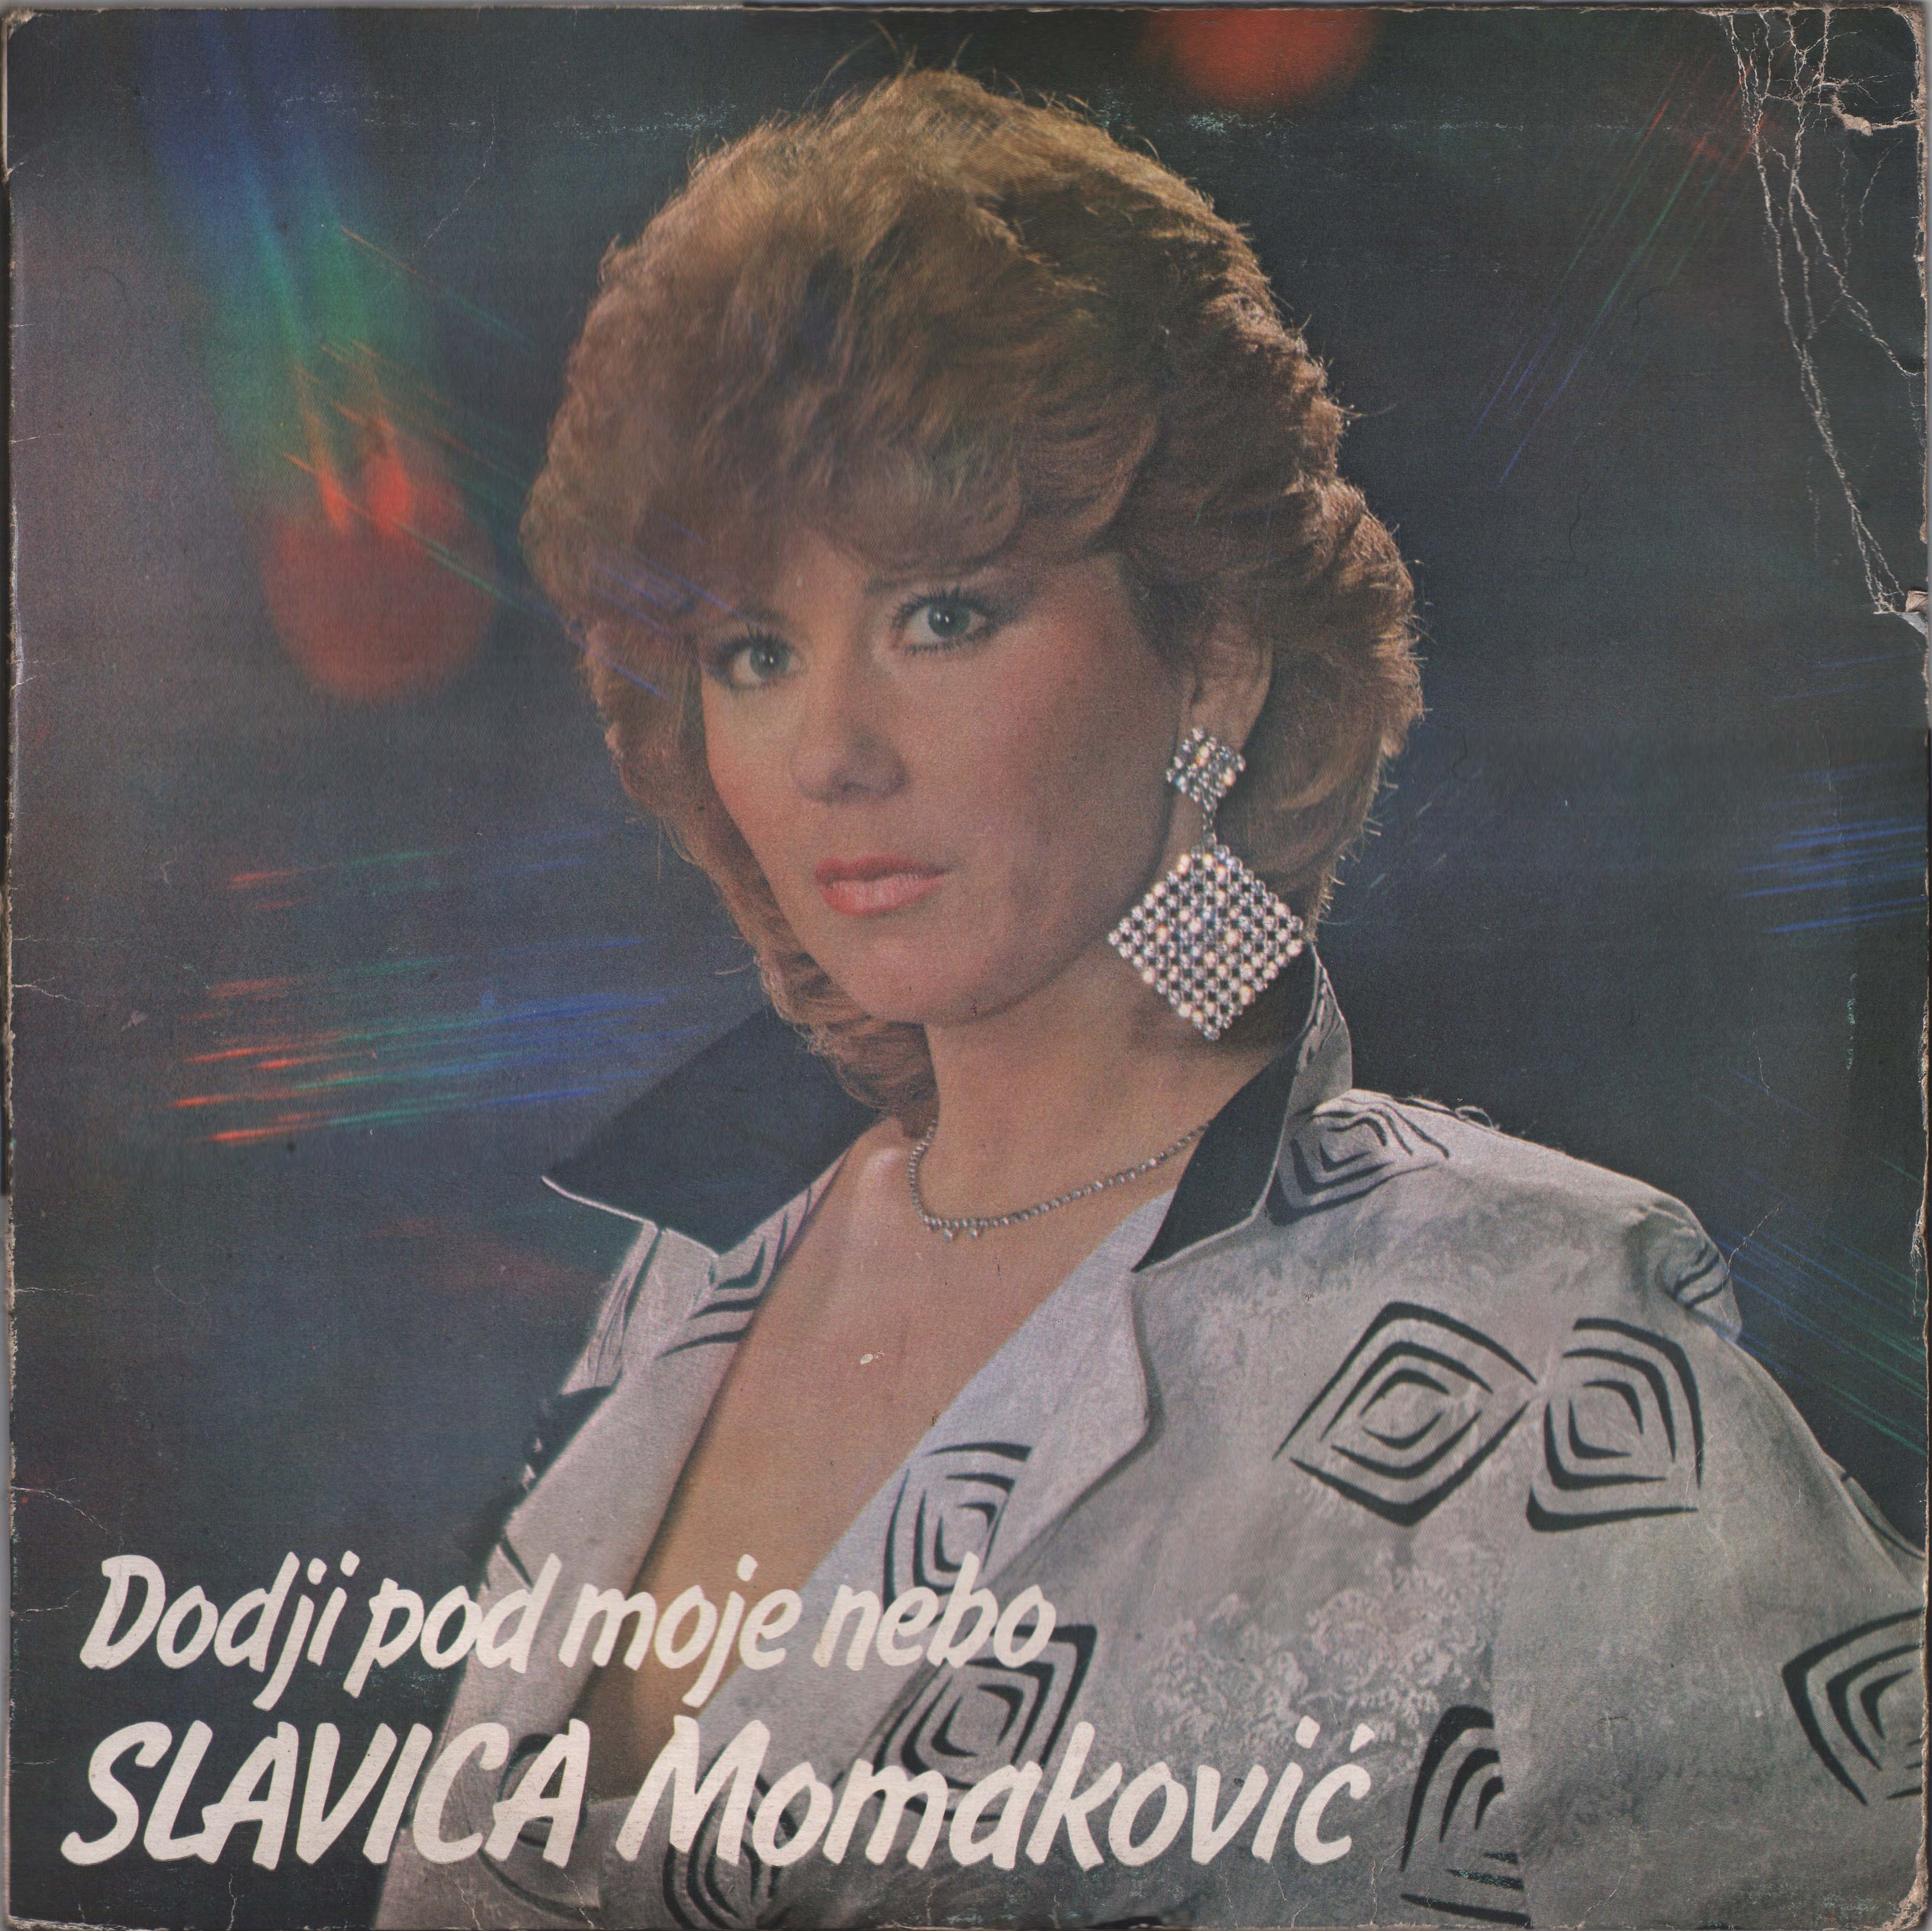 Slavica Momakovic 1985 P